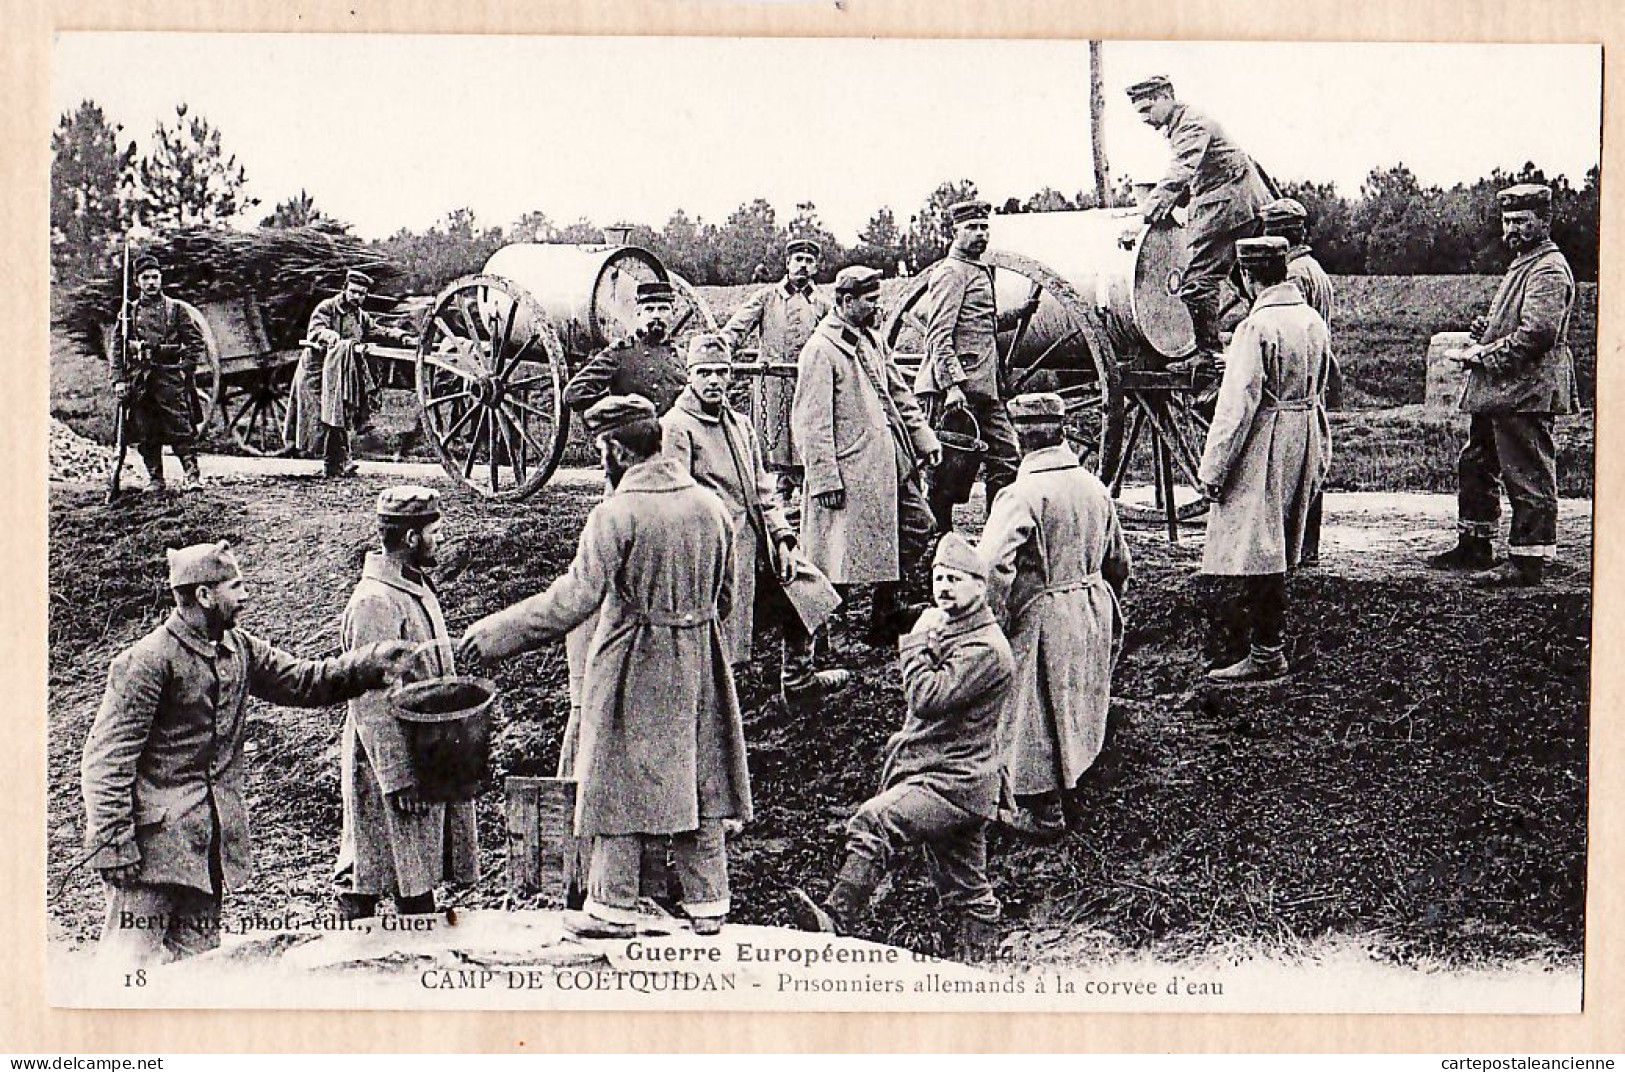 01697 / Camp De COETQUIDAN 56-Morbihan Prisonniers Allemands Corvée D'Eau Guerre Européenne 1914 BERTHAUX 18 - Guer Coetquidan